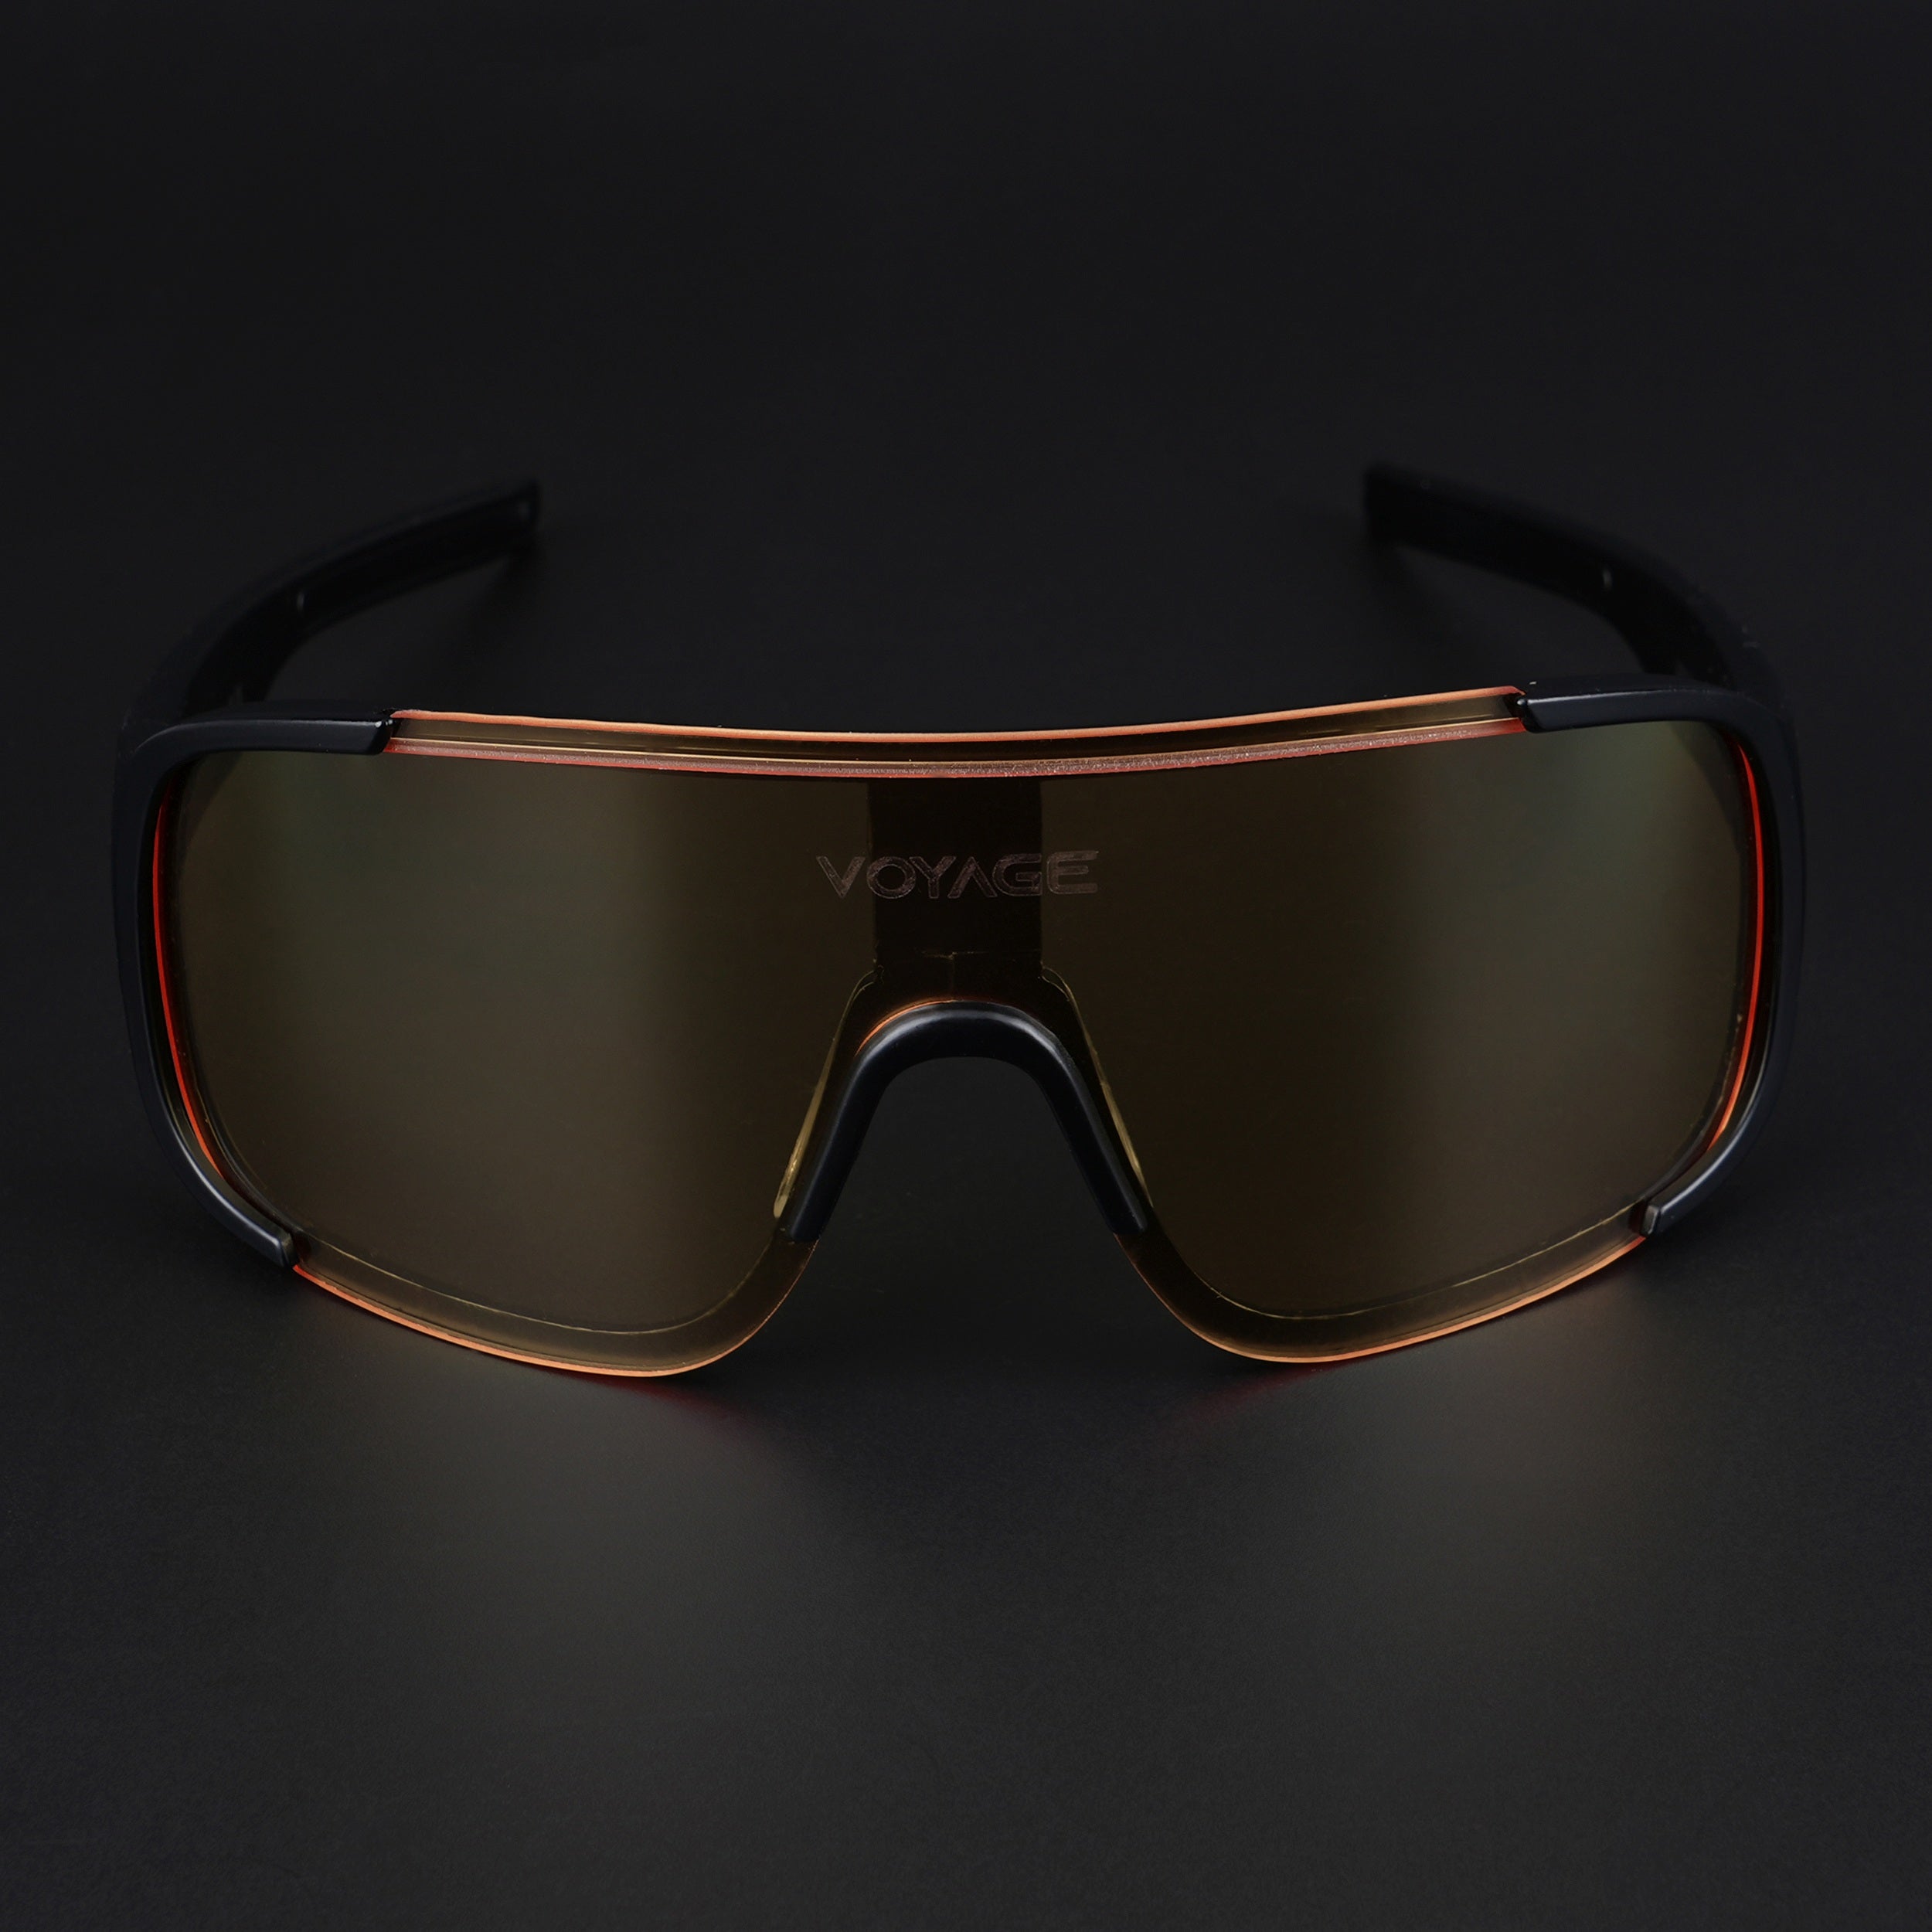 Voyage Drift Sunglasses for Men & Women (Yellow Lens | Black Frame - MG5520)